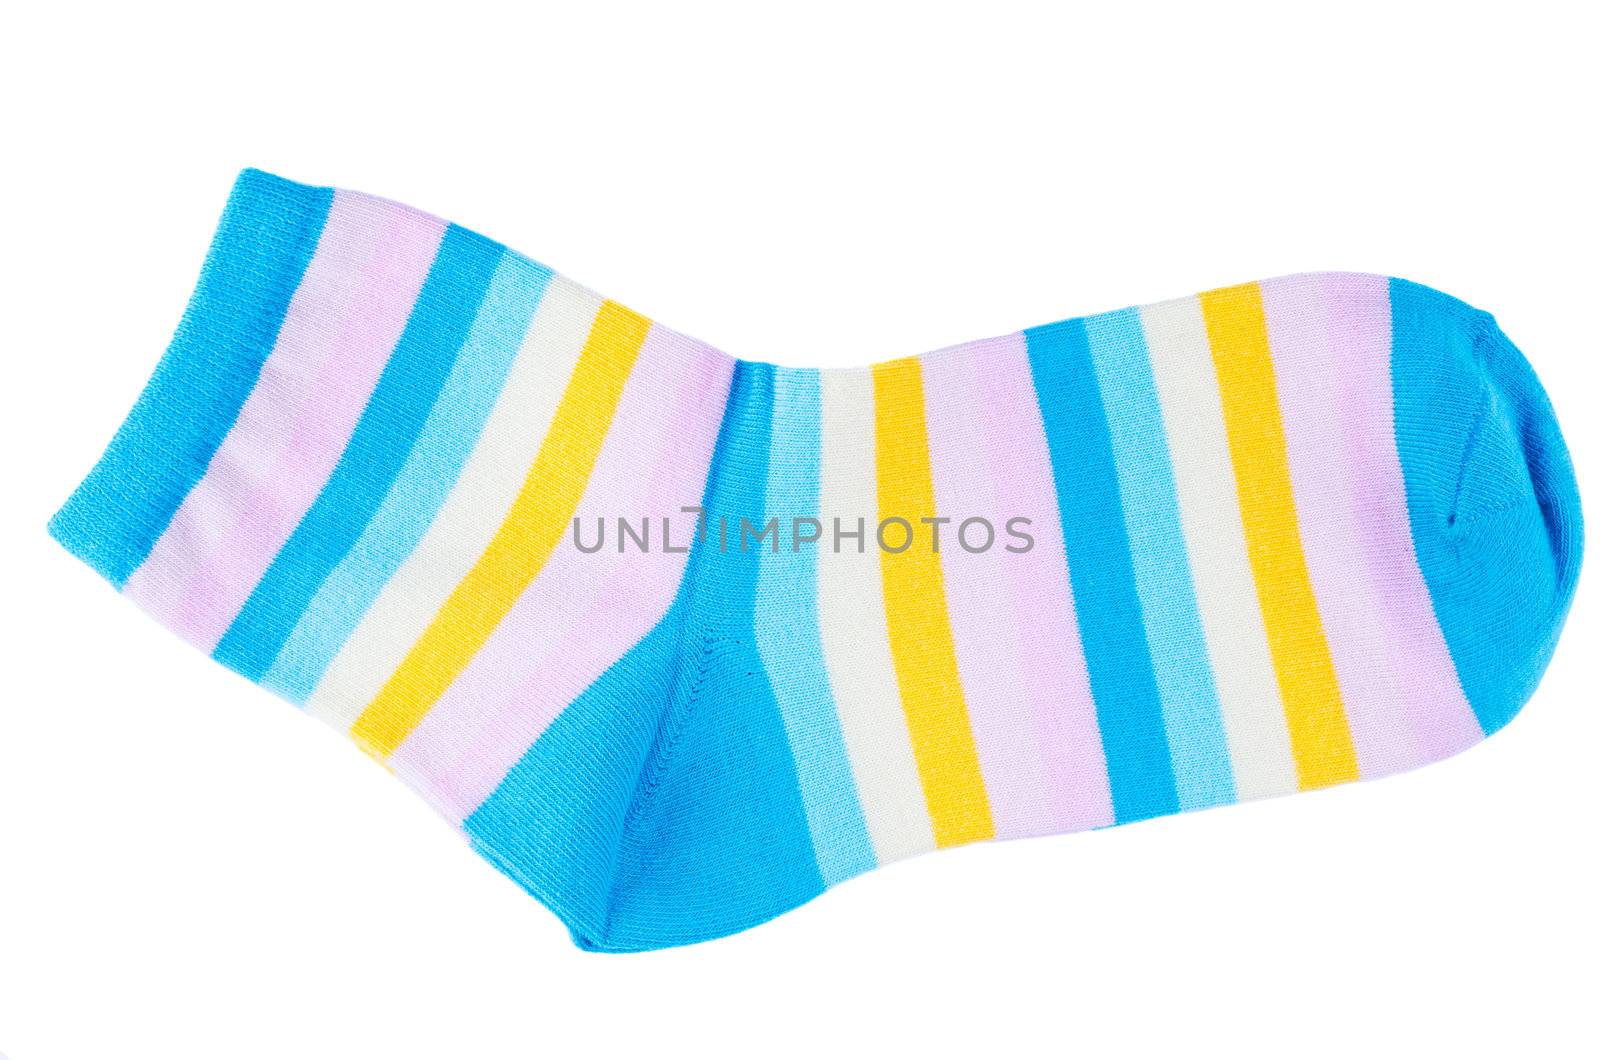 Striped socks by Nanisimova